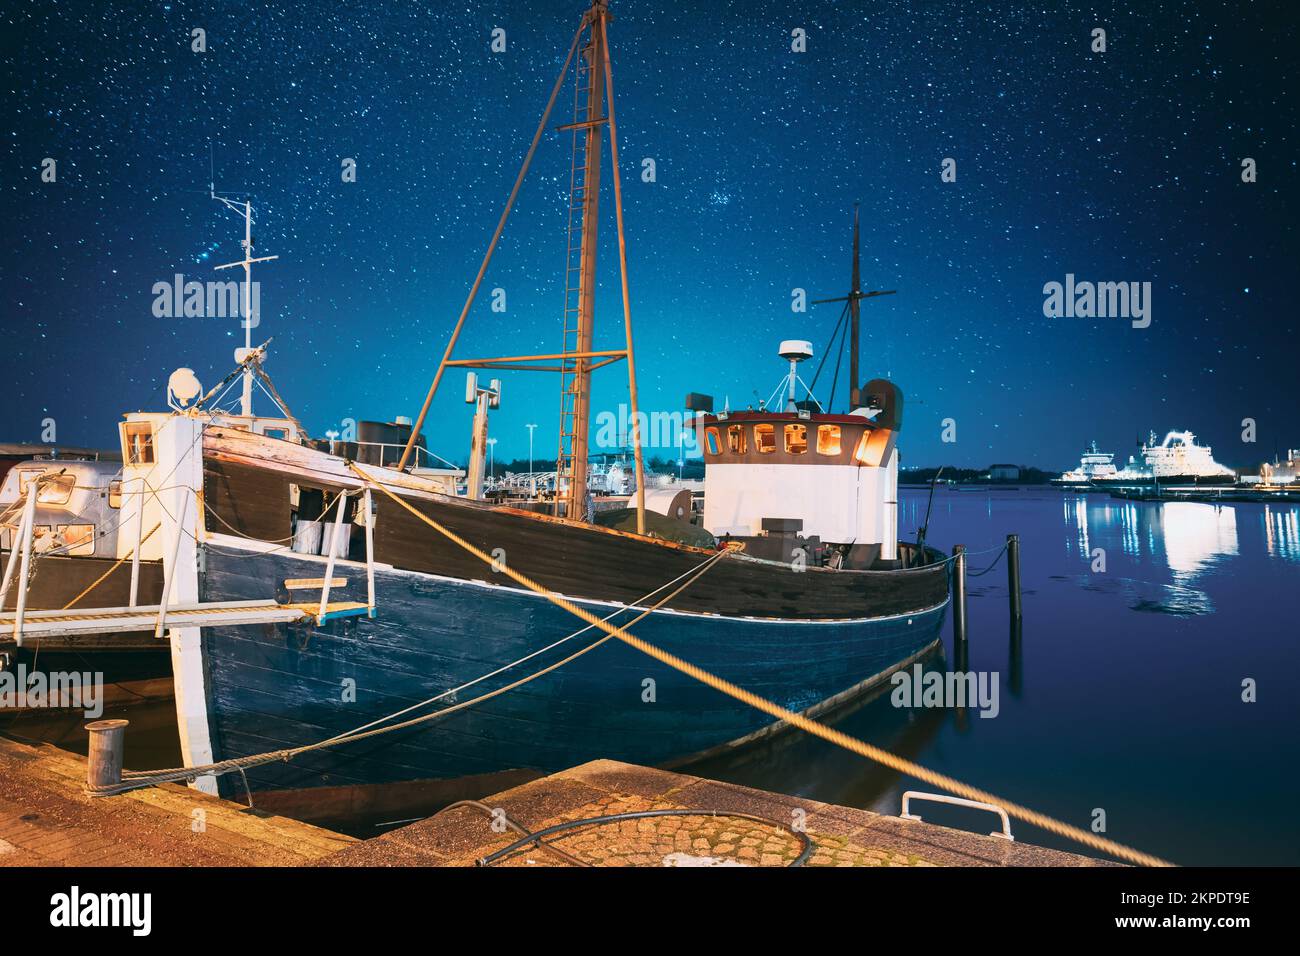 Helsinki, Finlande. Ciel étoilé bleu vif. Vue sur la pêche bateau de plaisance, bateau de moteur à l'embarcadère dans les illuminations nocturnes. Bleu clair ciel spectaculaire Banque D'Images